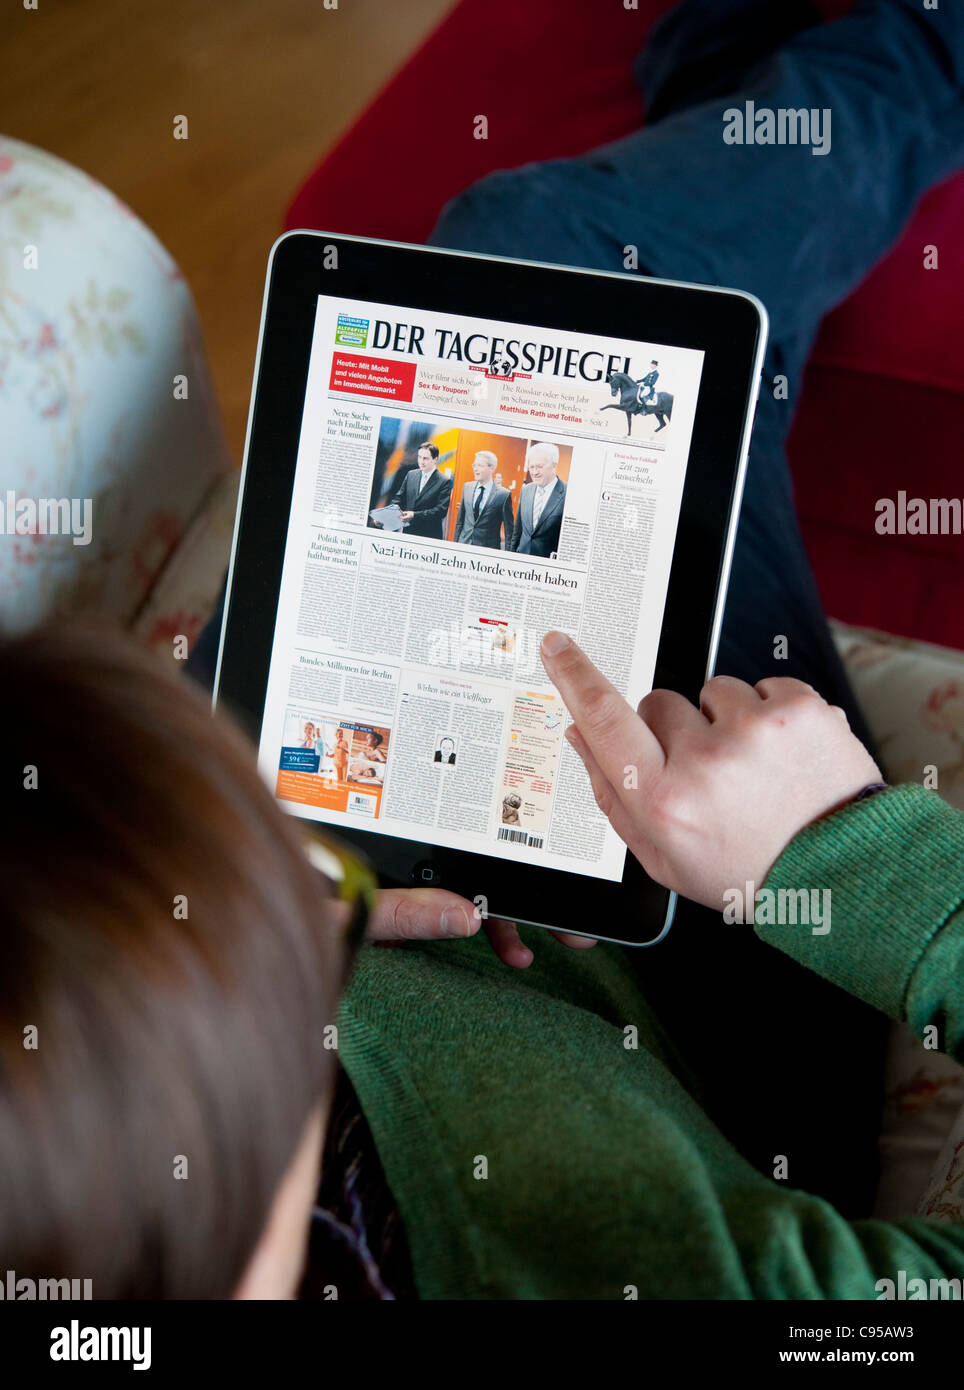 Femme à l'aide de l'ordinateur tablette iPad pour lire Digital edition of Der Tagesspiegel journal en Allemagne Banque D'Images